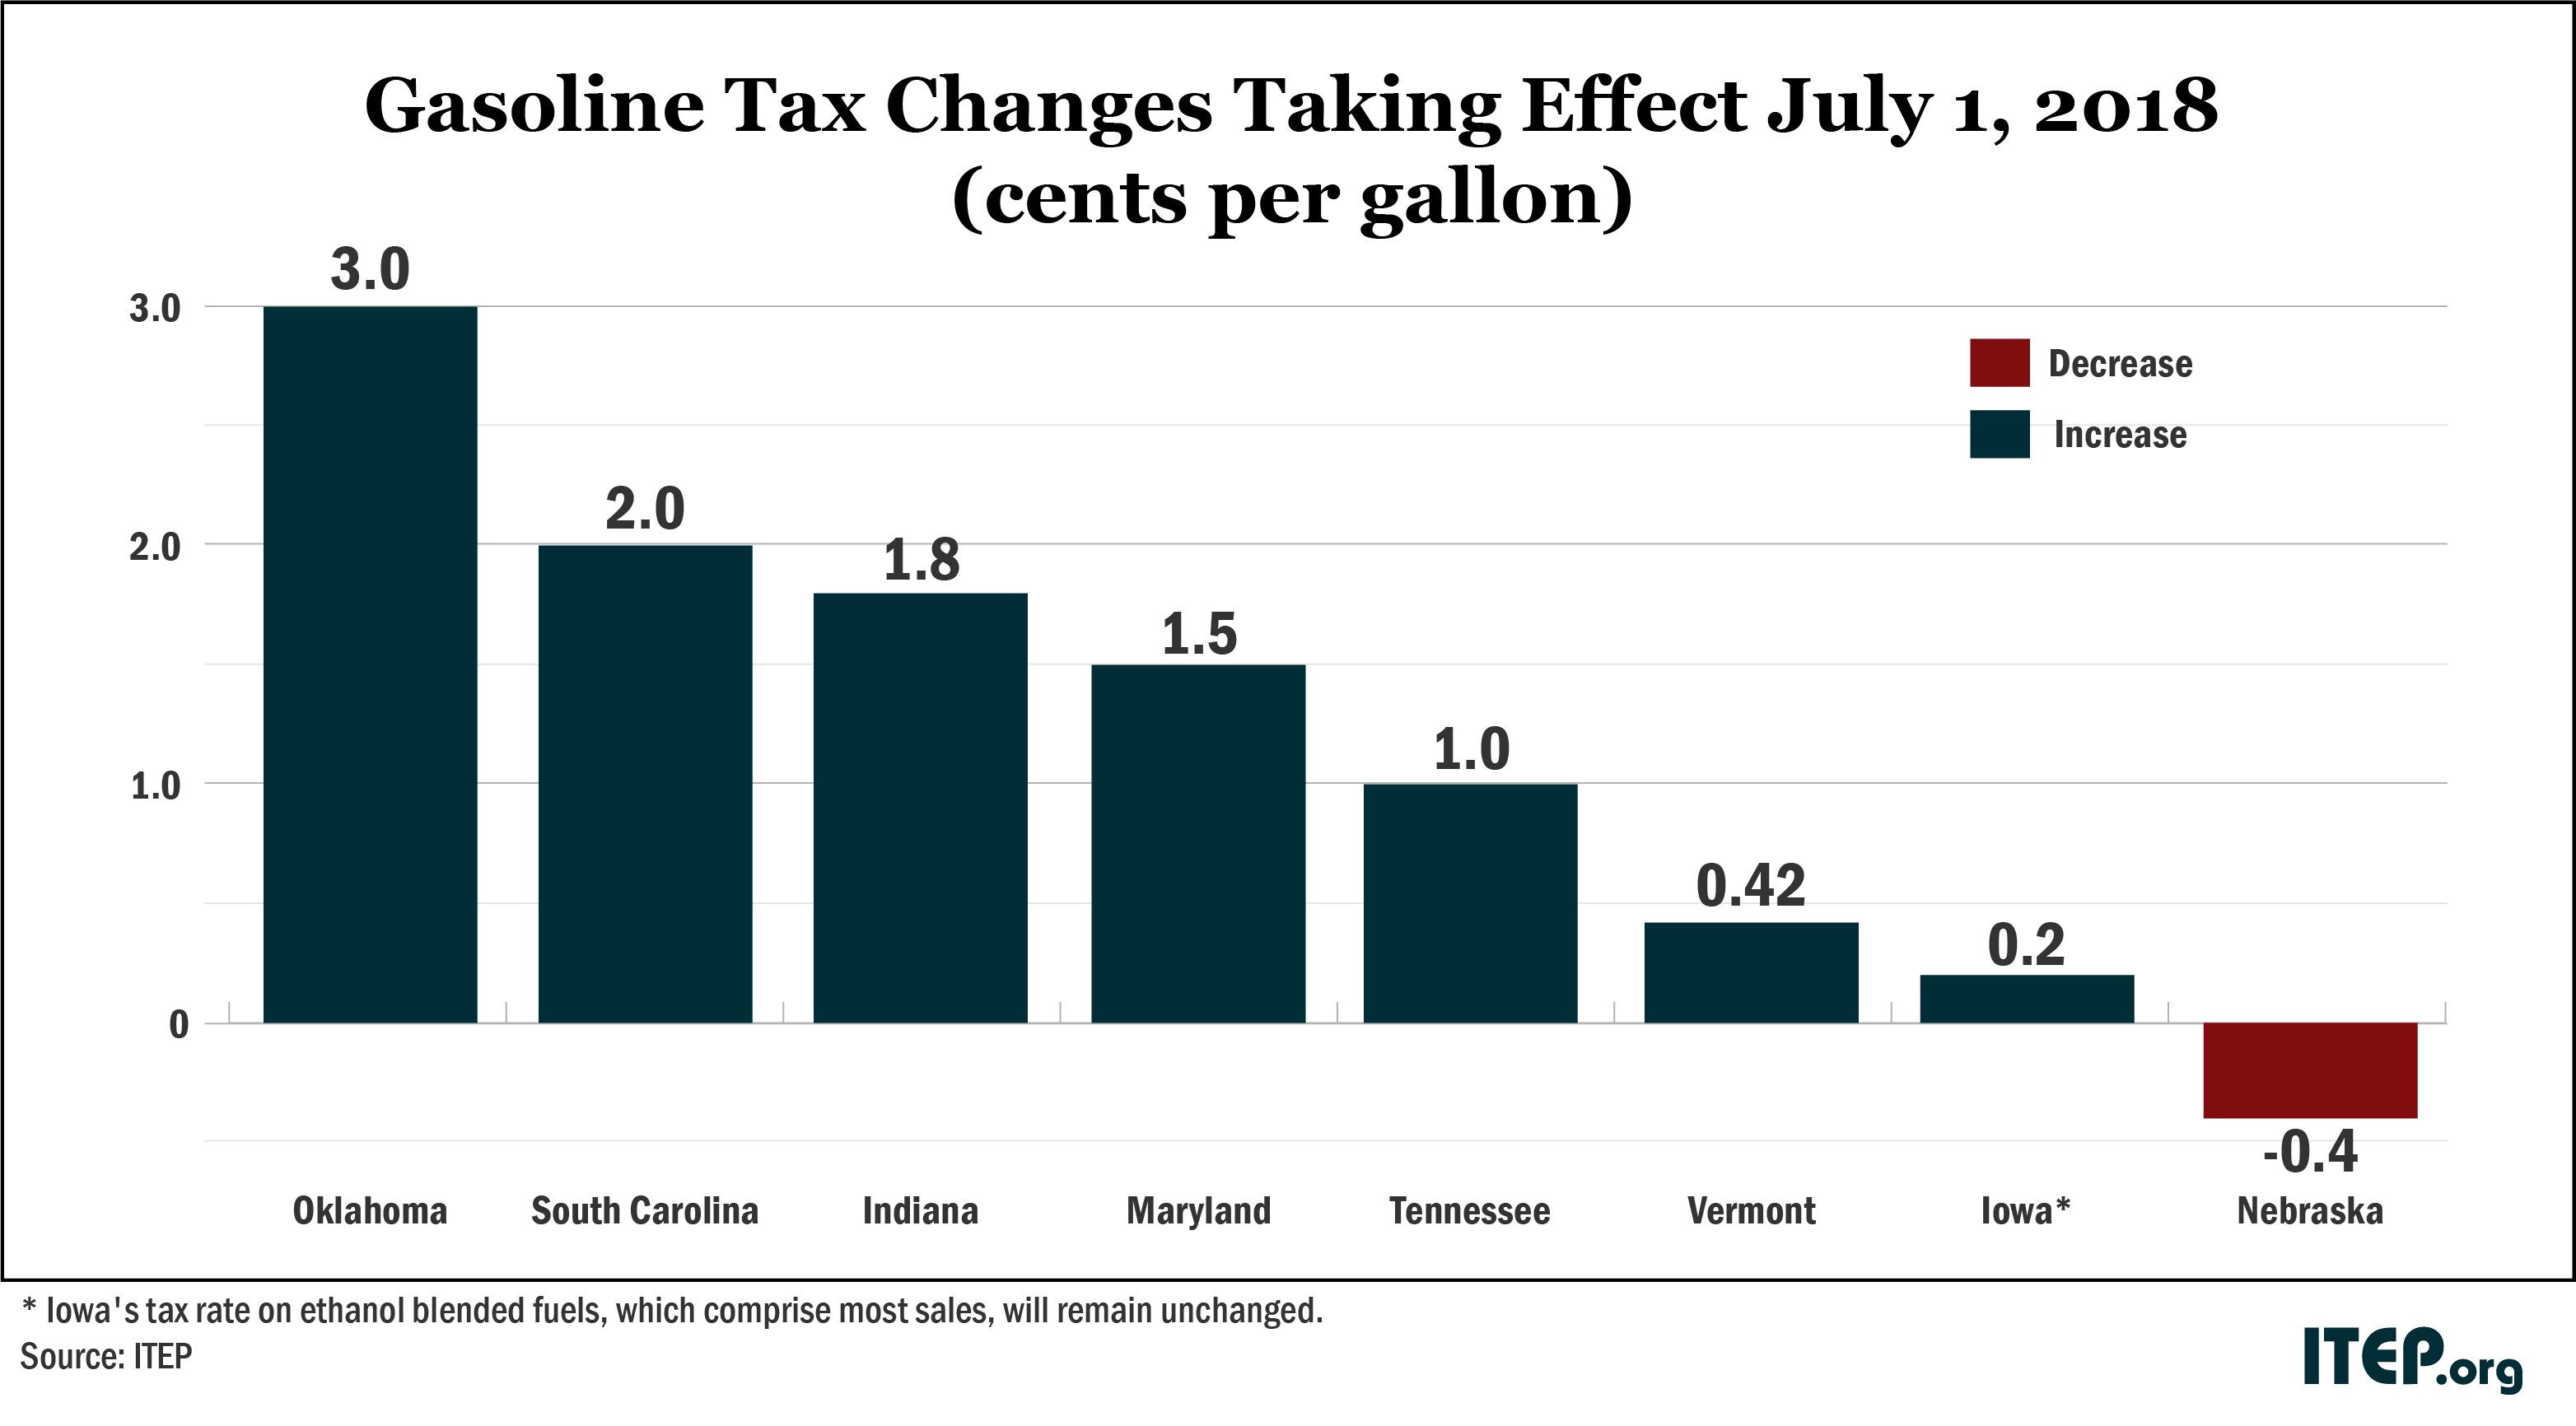 State Fuel Tax Chart